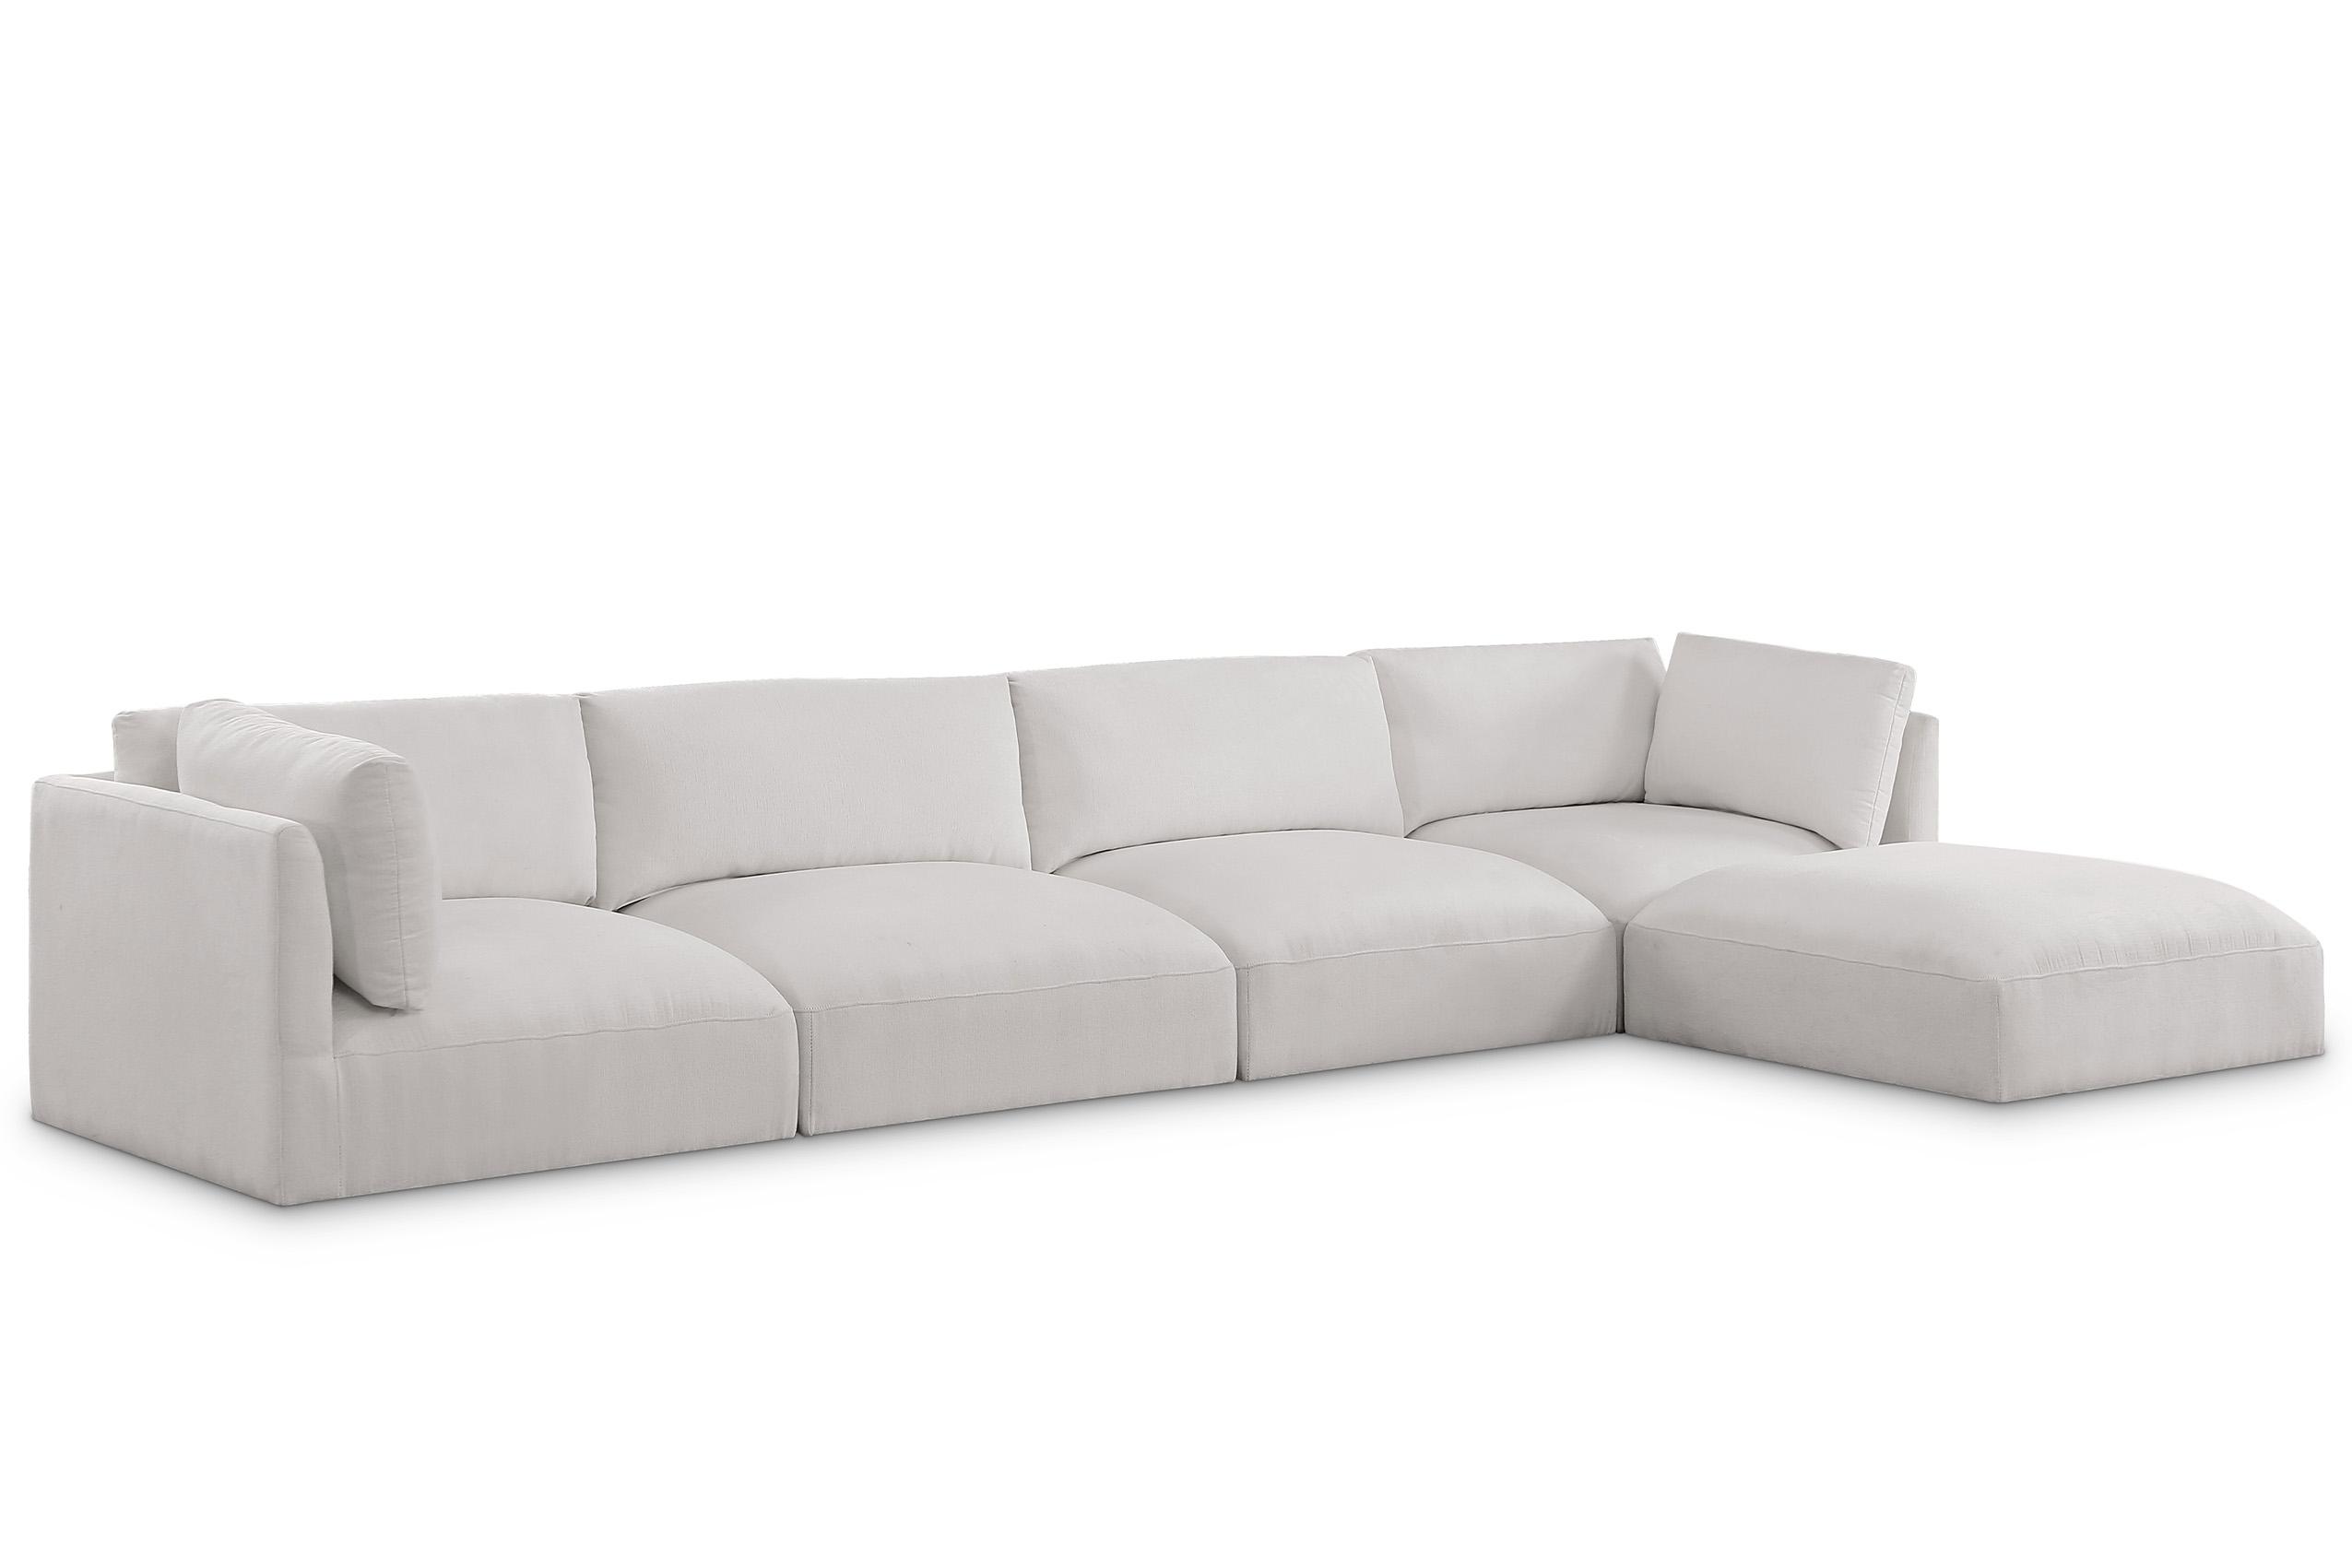 Contemporary, Modern Modular Sectional Sofa EASE 696Cream-Sec5A 696Cream-Sec5A in Cream Fabric